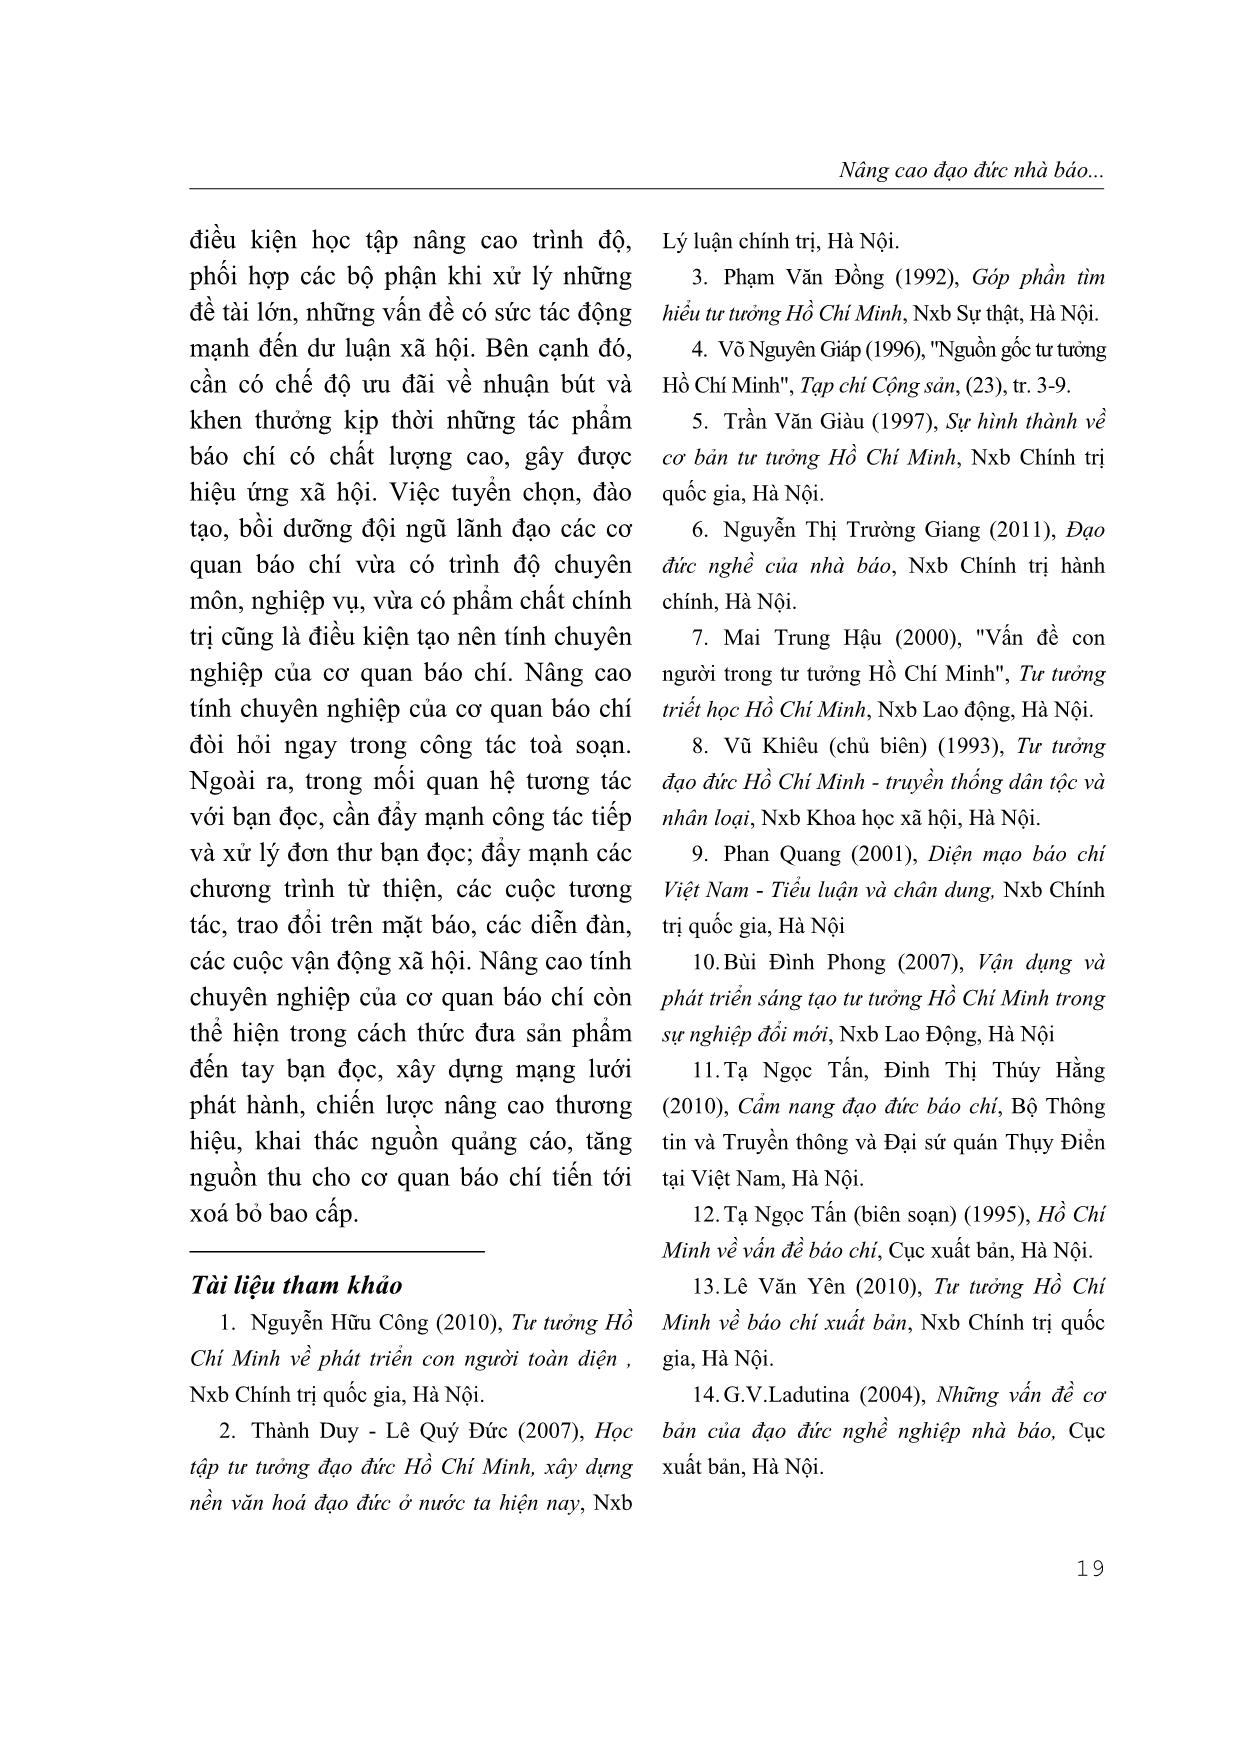 Nâng cao đạo đức nhà báo theo tư tưởng Hồ Chí Minh trang 10